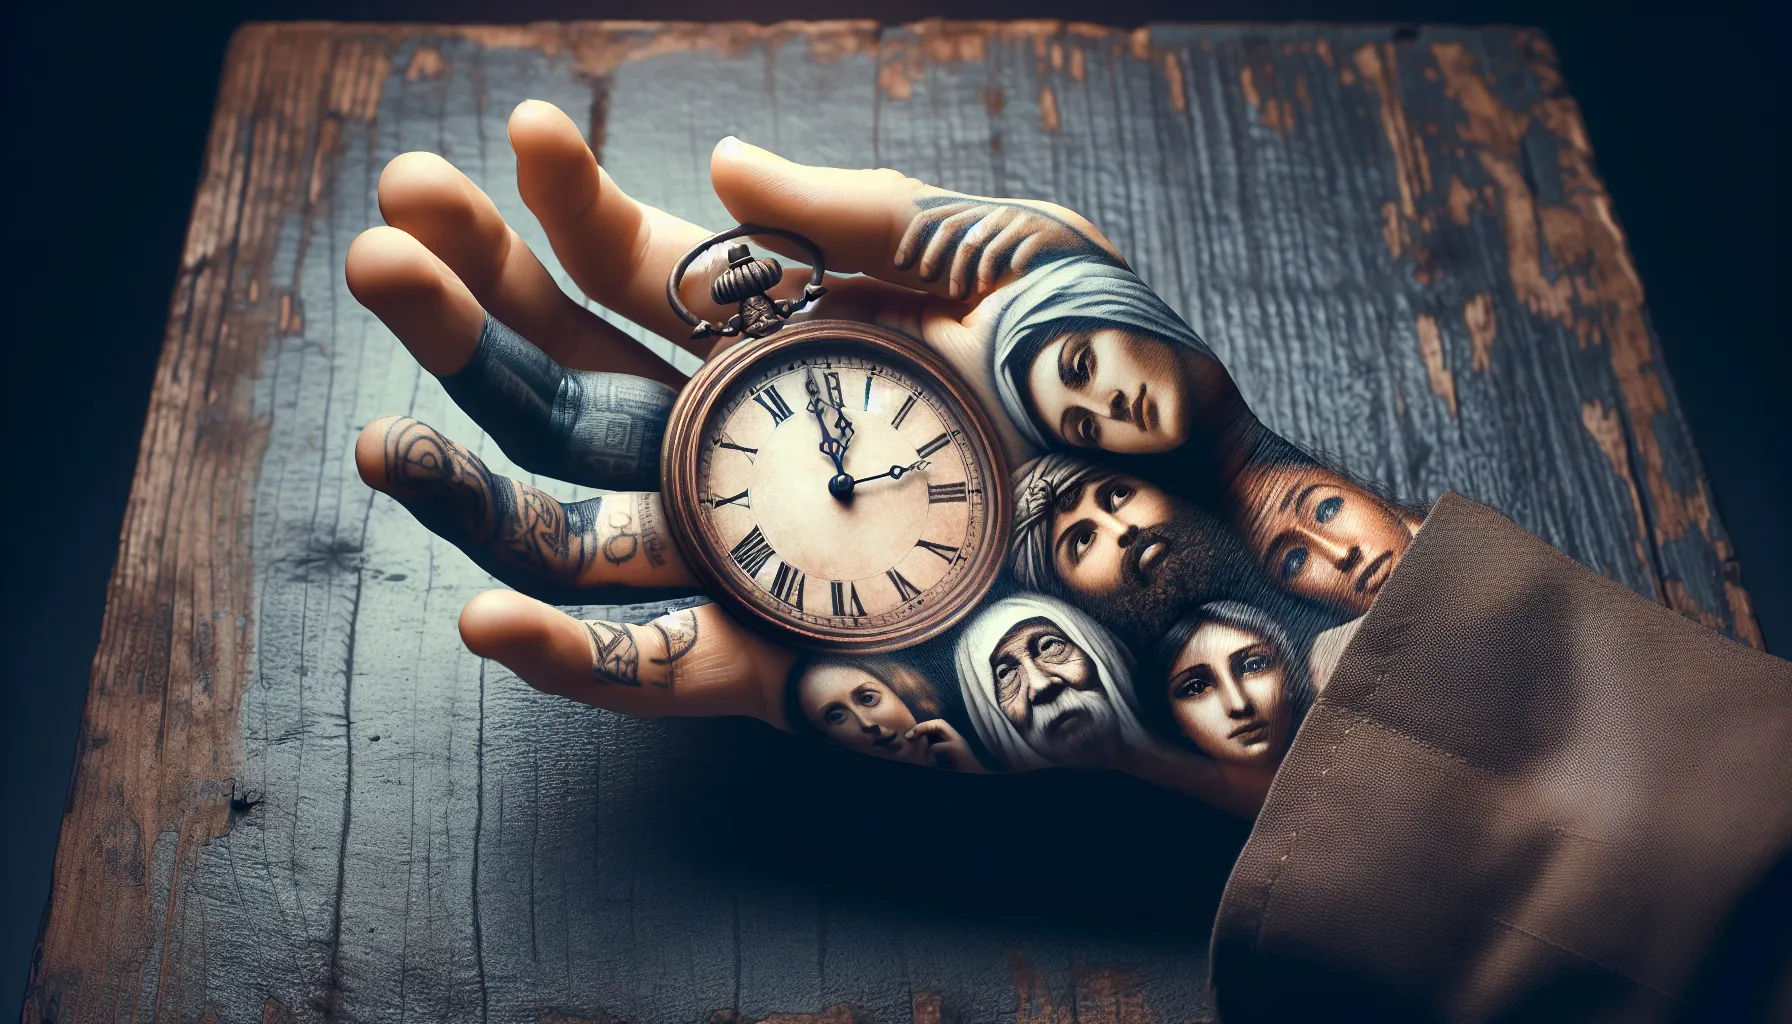 Imagen de la mano de una persona mirando un reloj antiguo